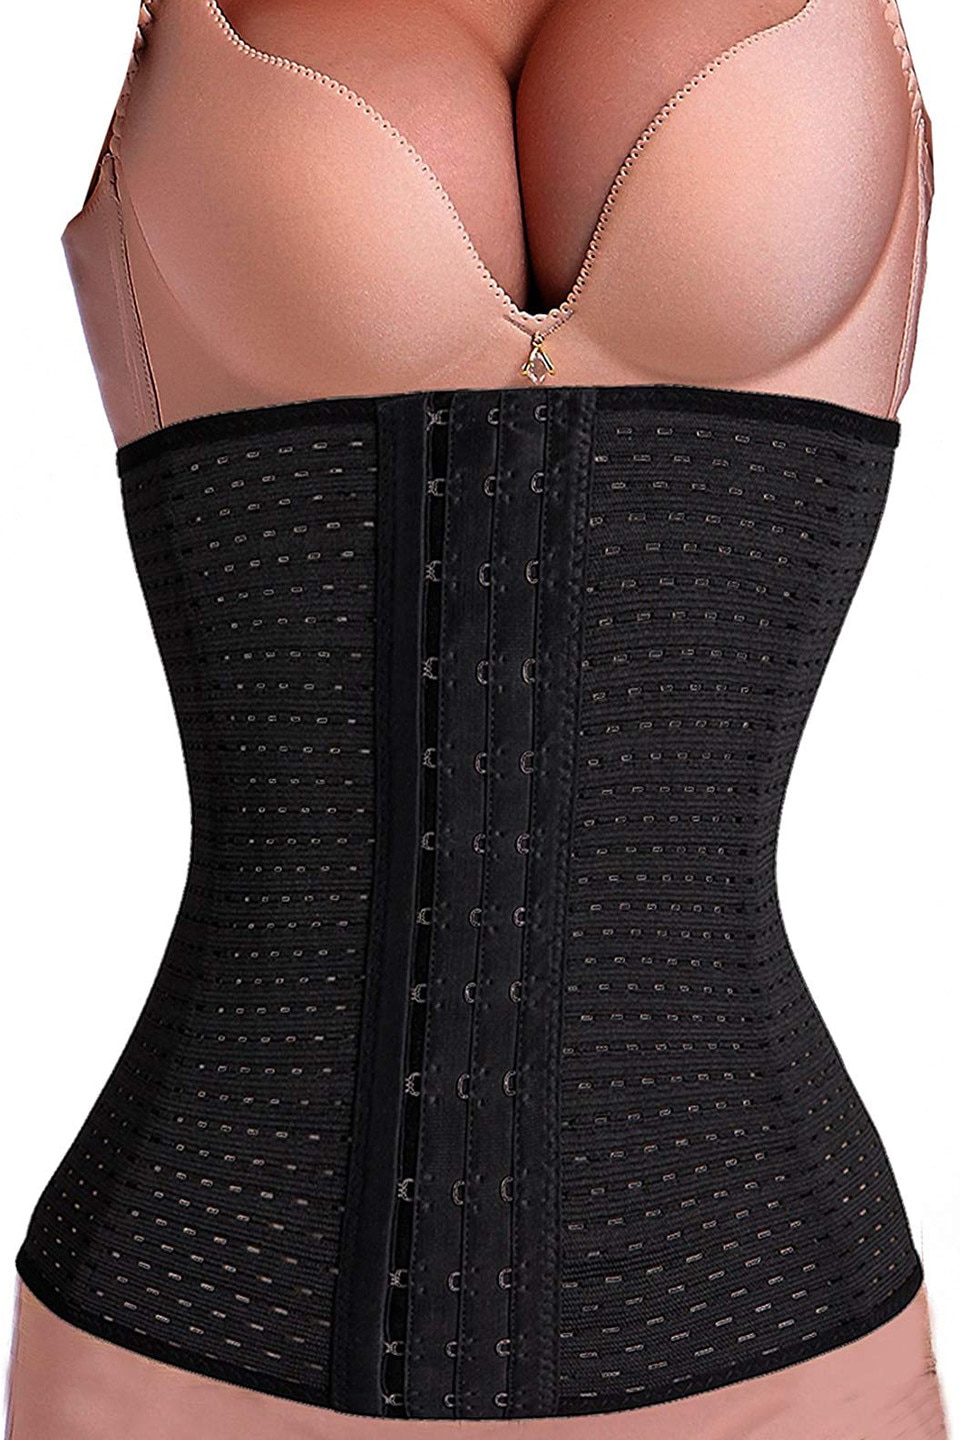 Corset modelator de slabit pentru femei, abdomen si talie | metin2dreams.ro